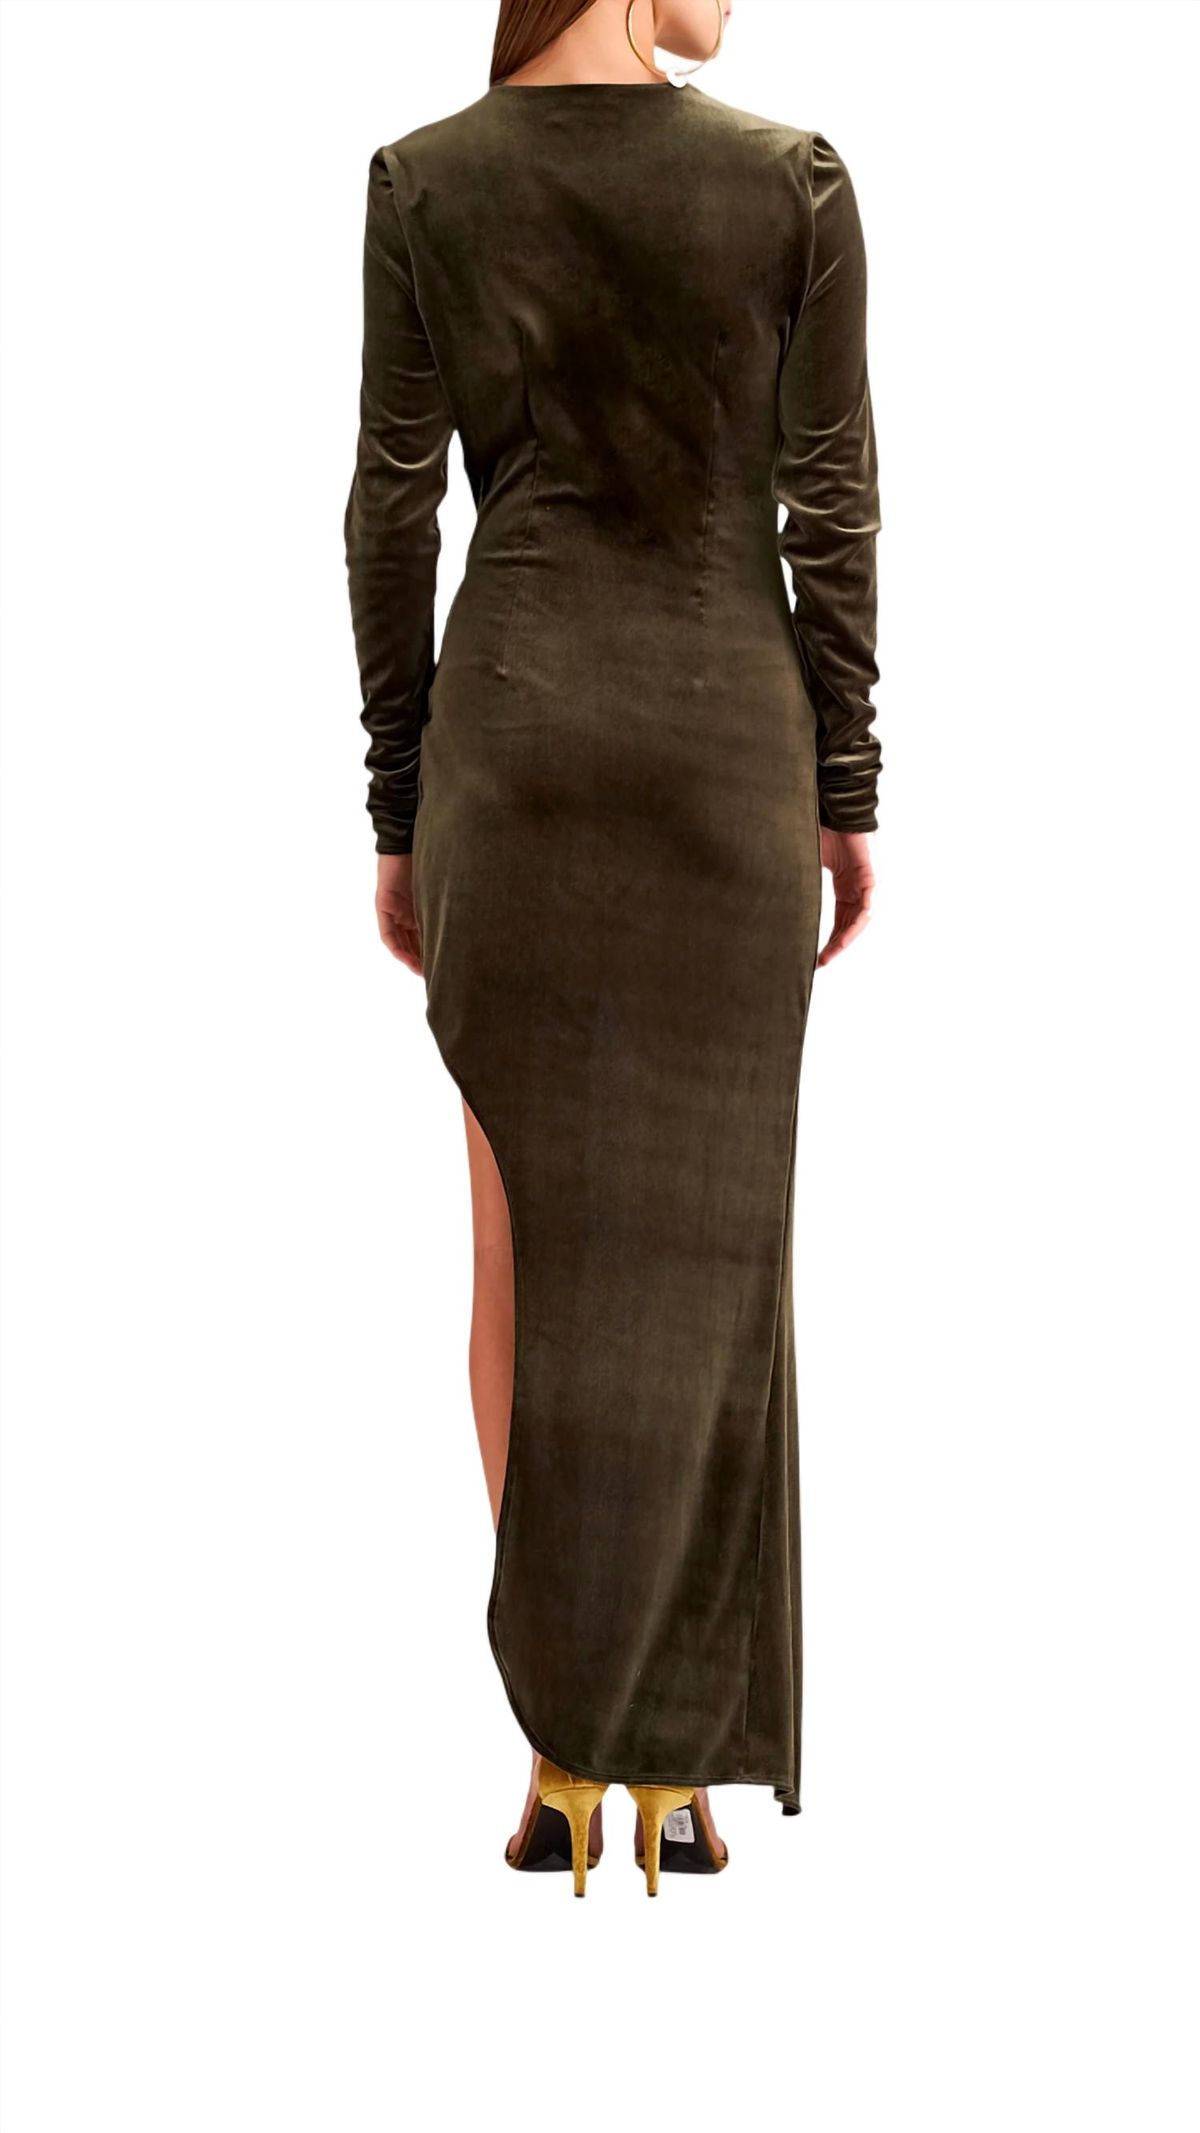 Style 1-442548542-3471 RONNY KOBO Size S Velvet Green Side Slit Dress on Queenly